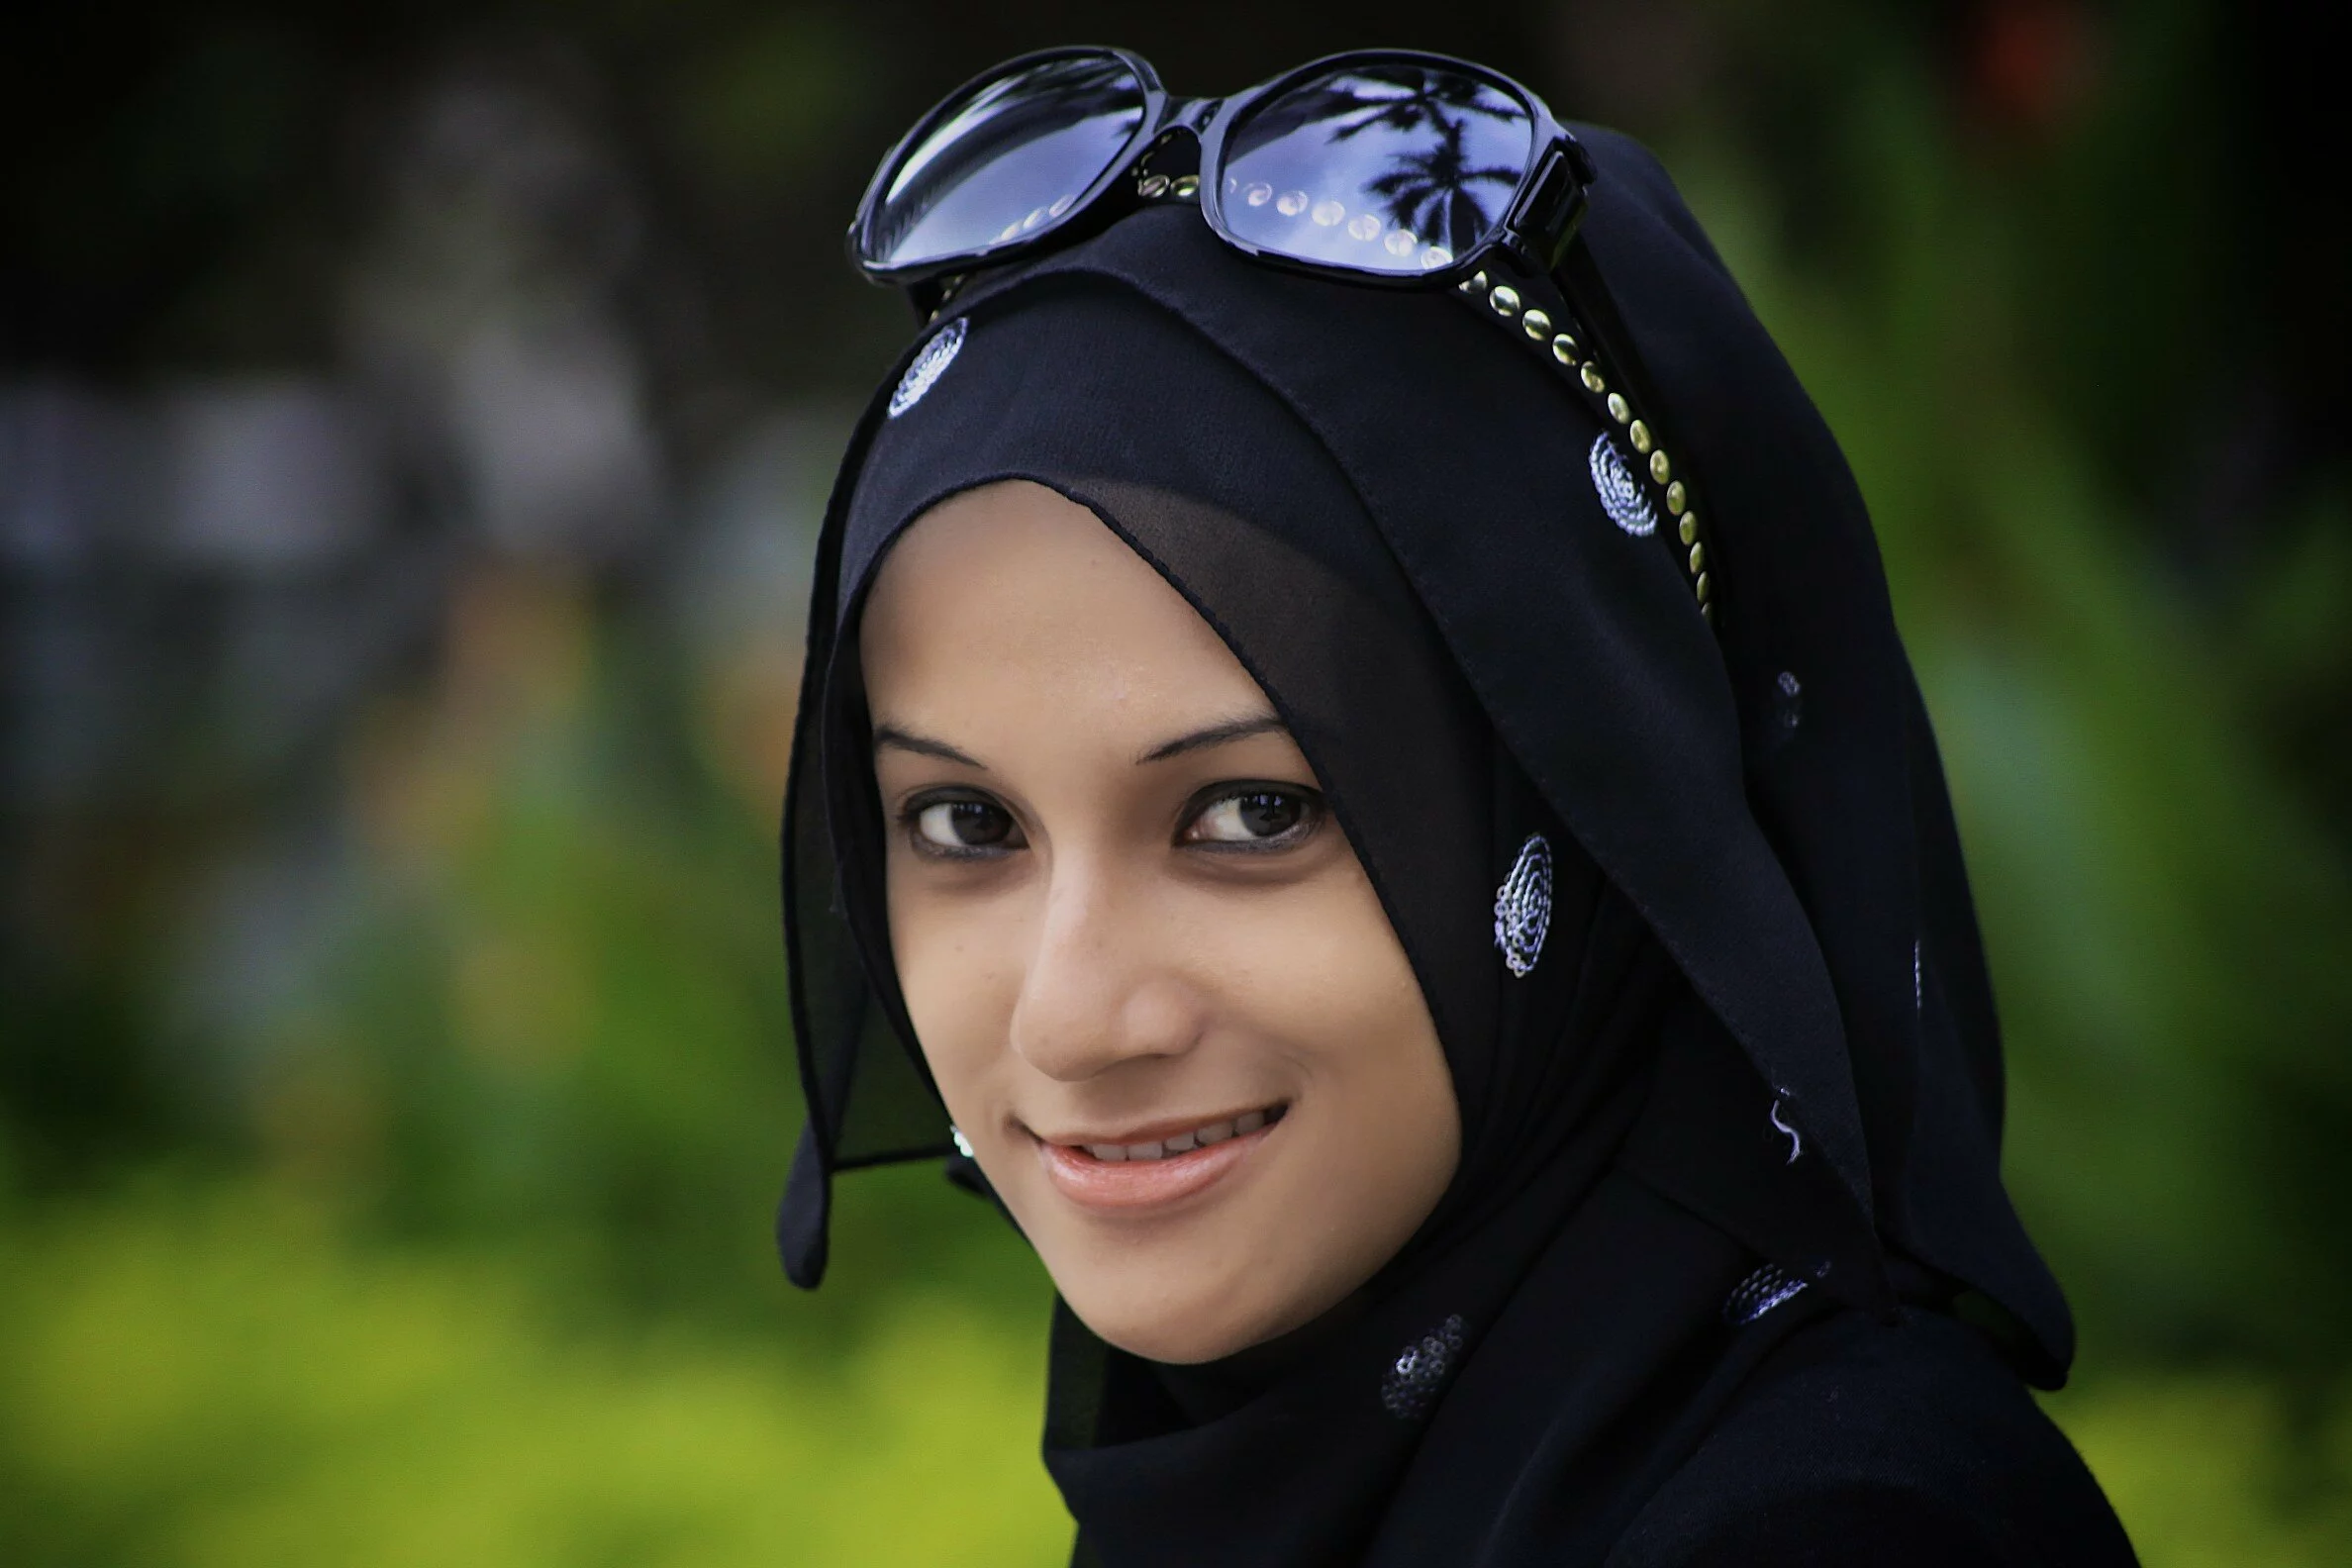 http://www.muslimblog.co.in/wp-content/uploads/2011/04/World-beautiful-muslim-women-in-hijab.jpg